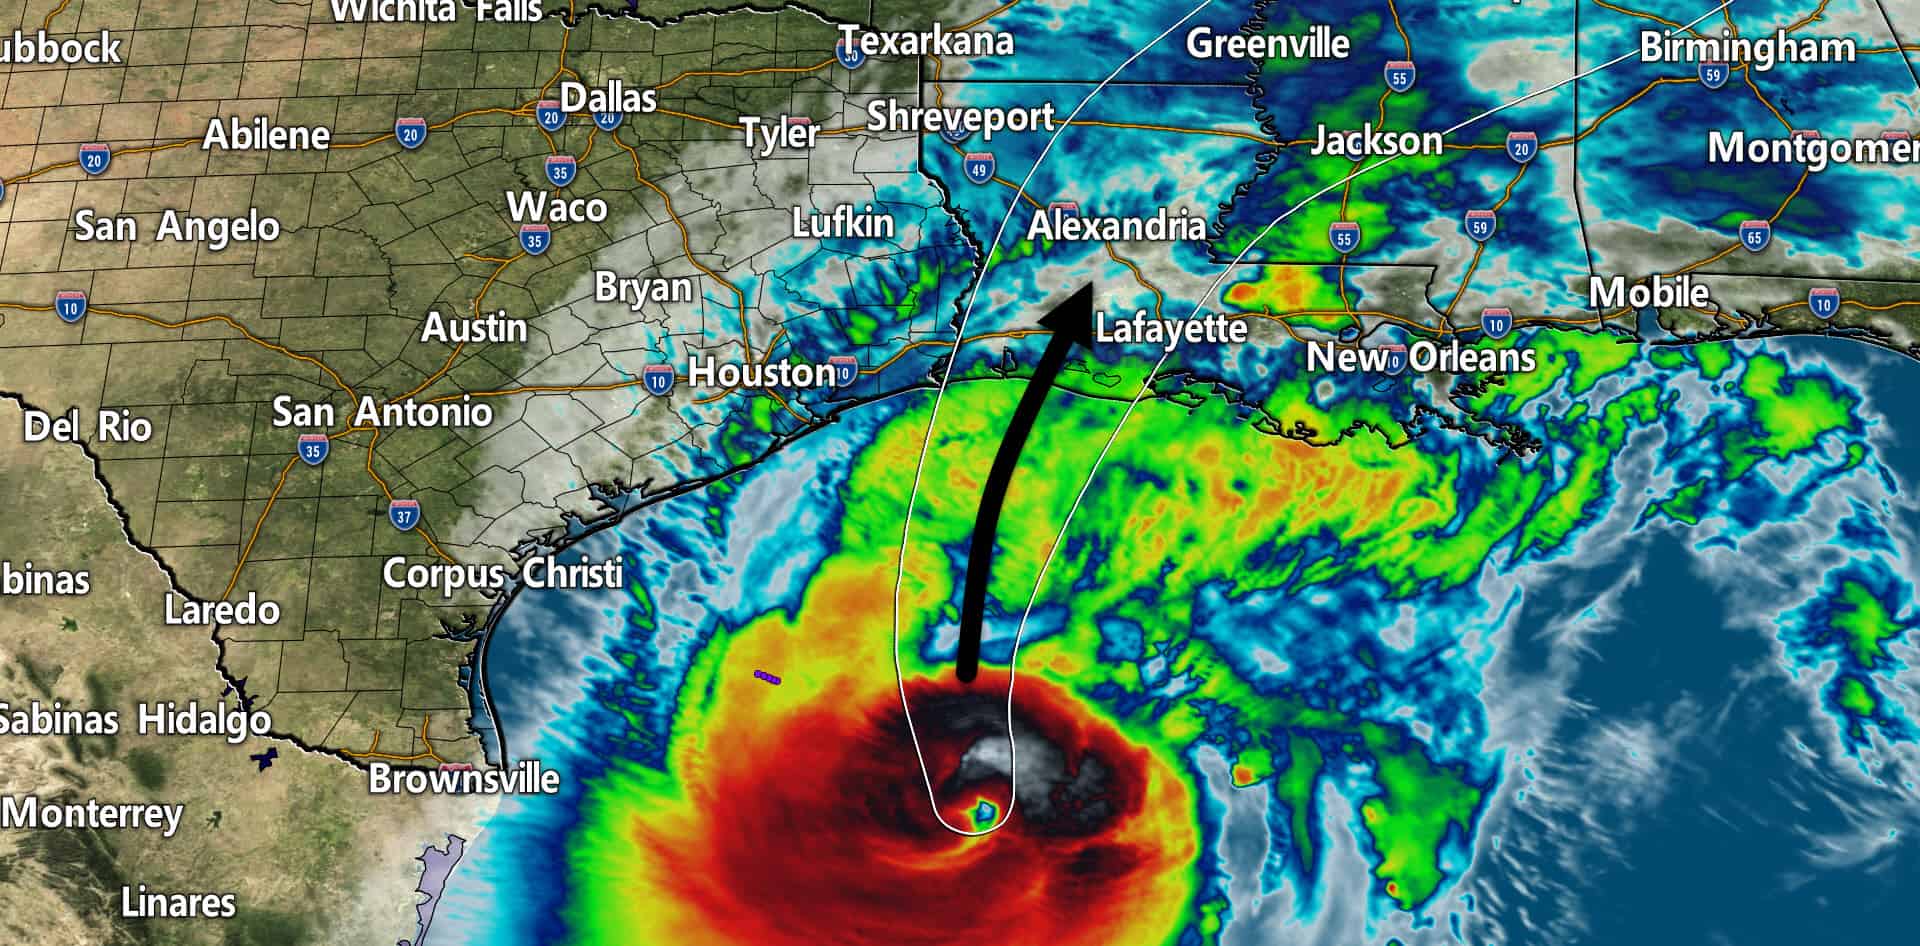 Major Hurricane Delta moving toward Southwestern Louisiana Coast